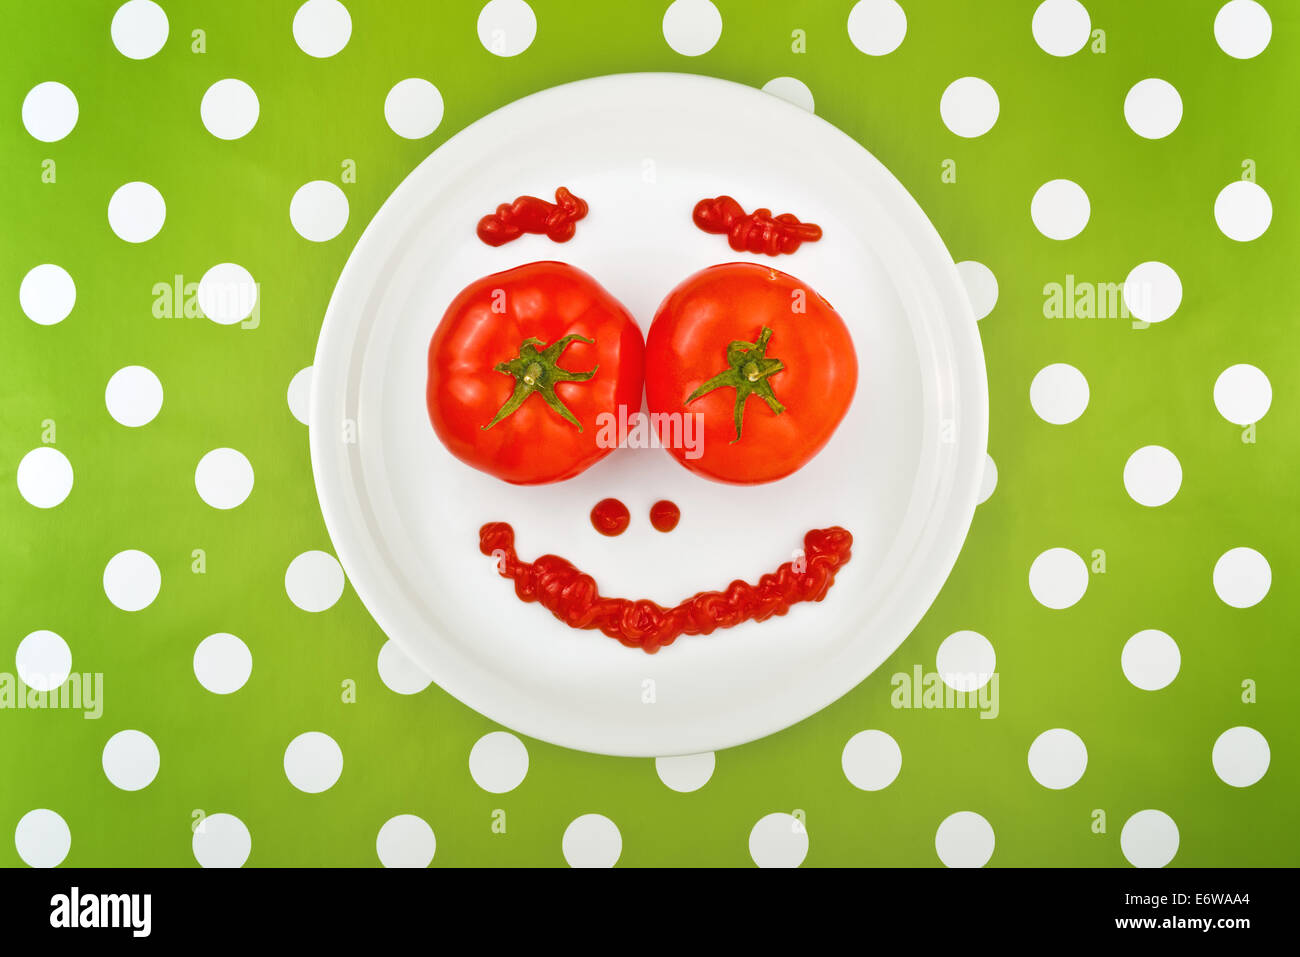 Tomates rouges mûres et ketchup faire smiley émoticone visage servi sur une plaque blanche sur table. Banque D'Images